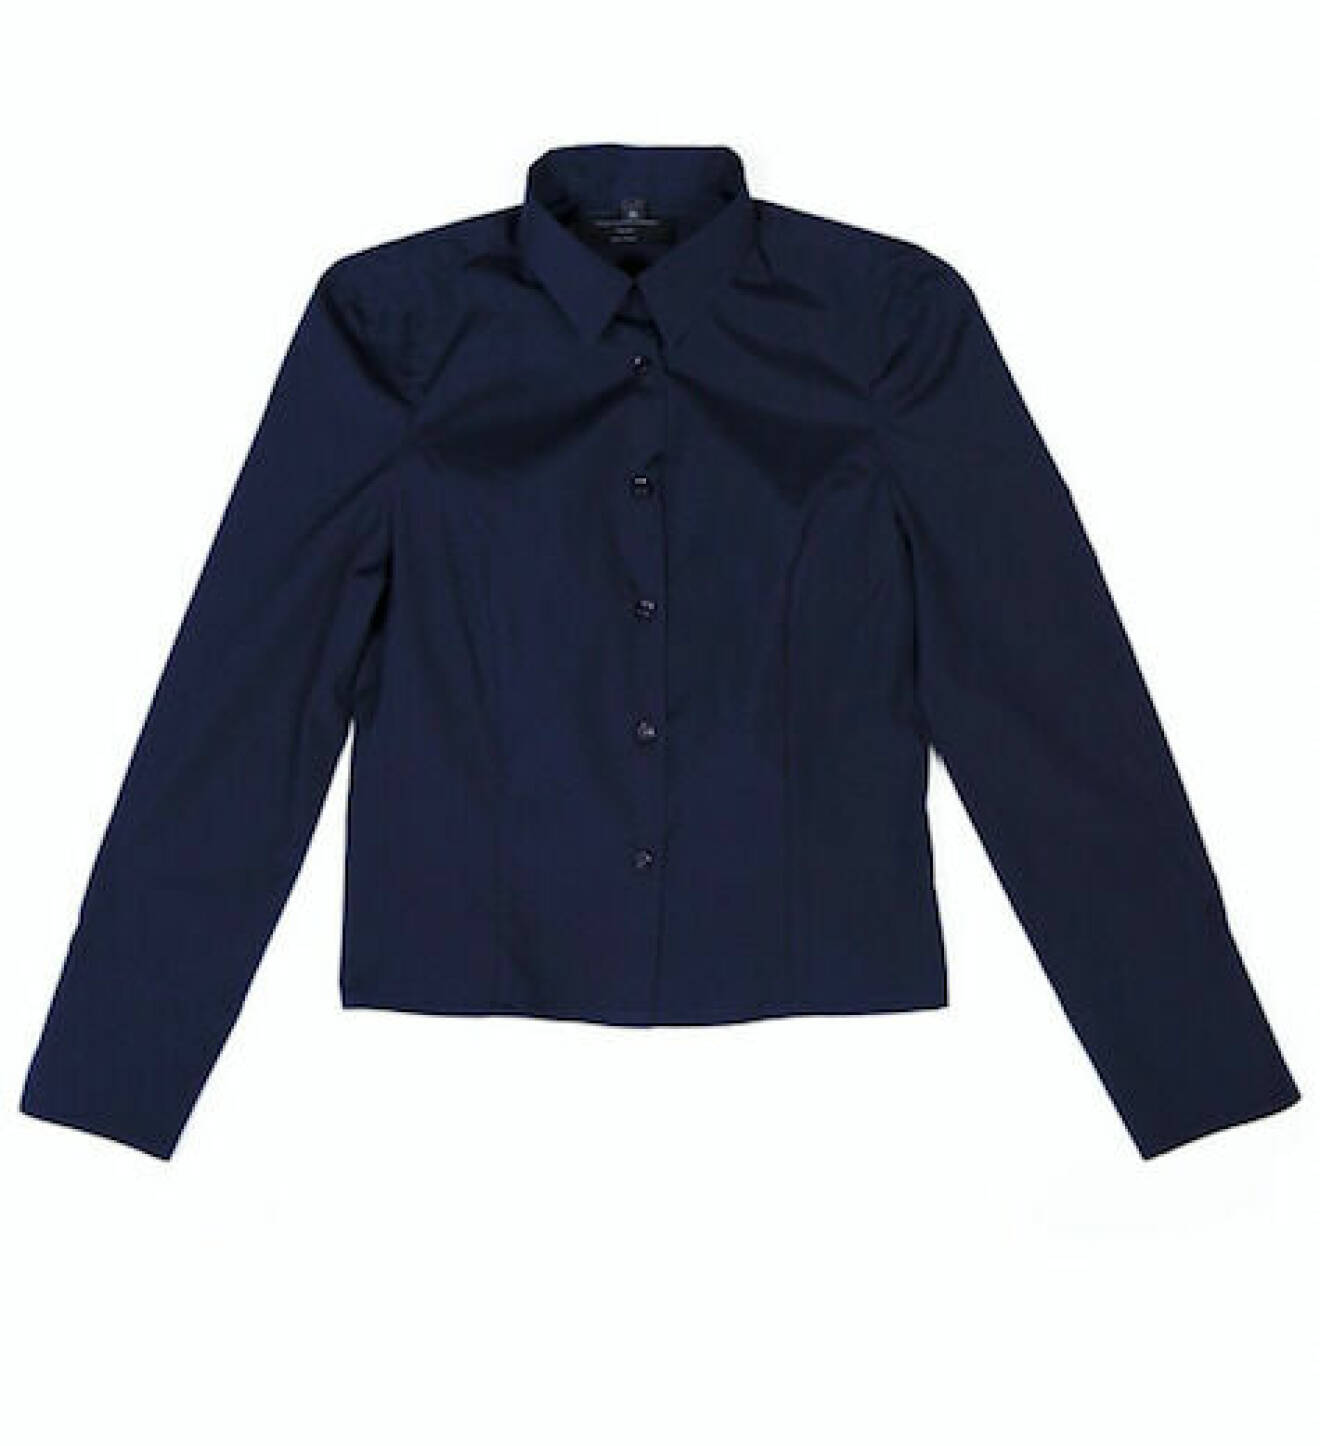 Marinblå, dressad skjorta från Samson Concept.